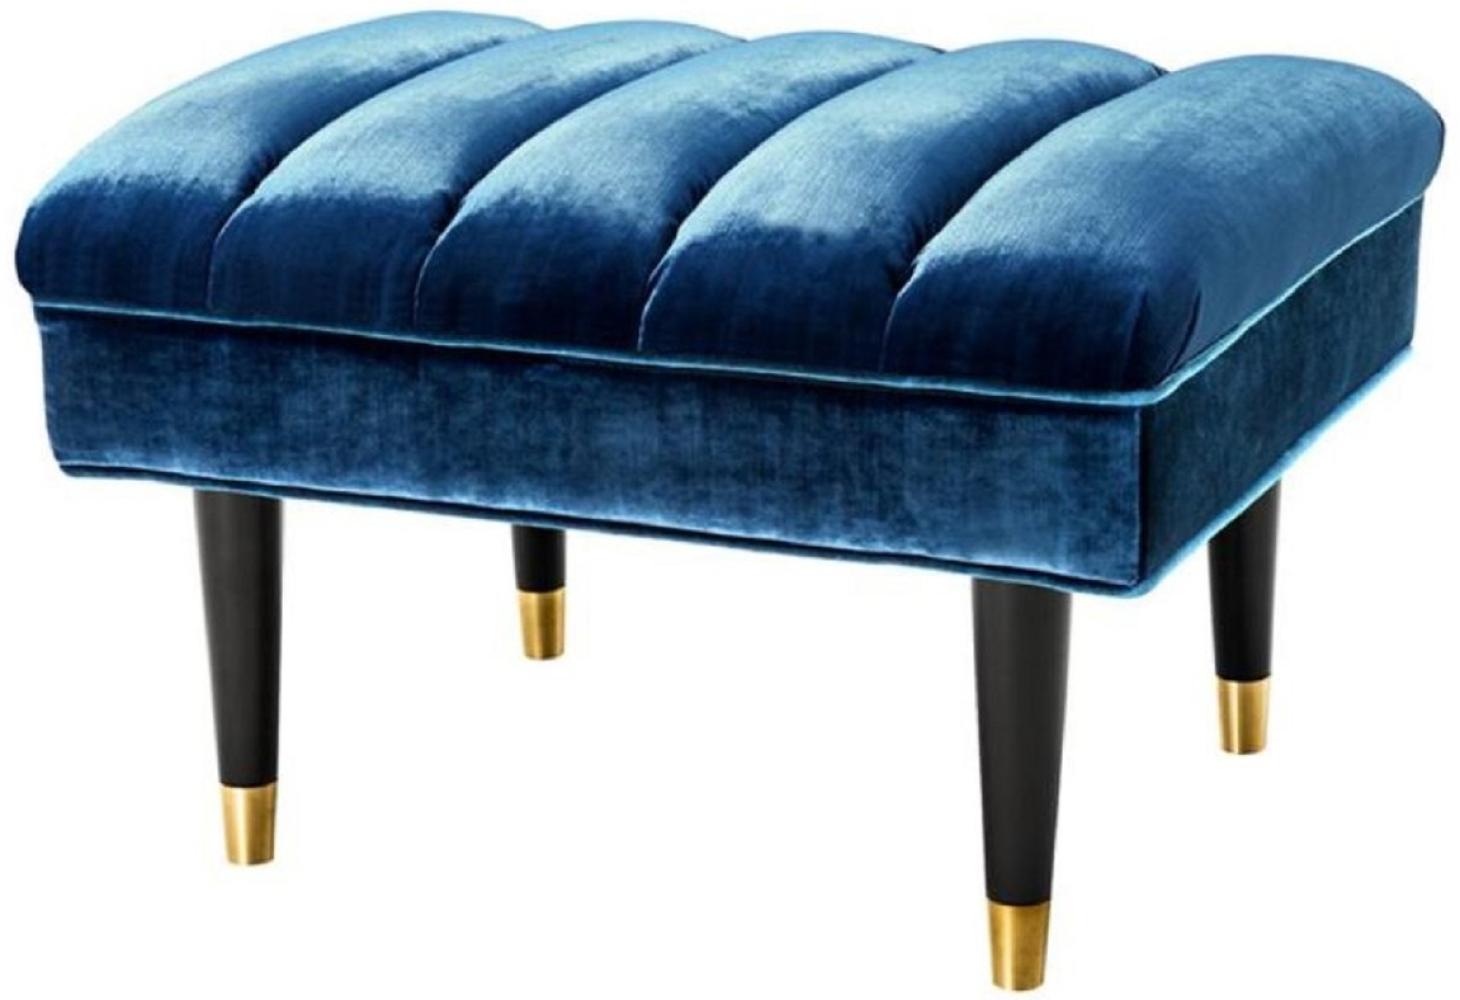 Casa Padrino Luxus Sitzbank Blau / Schwarz / Gold 68 x 50 x H. 45 cm - Hotel Möbel Bild 1